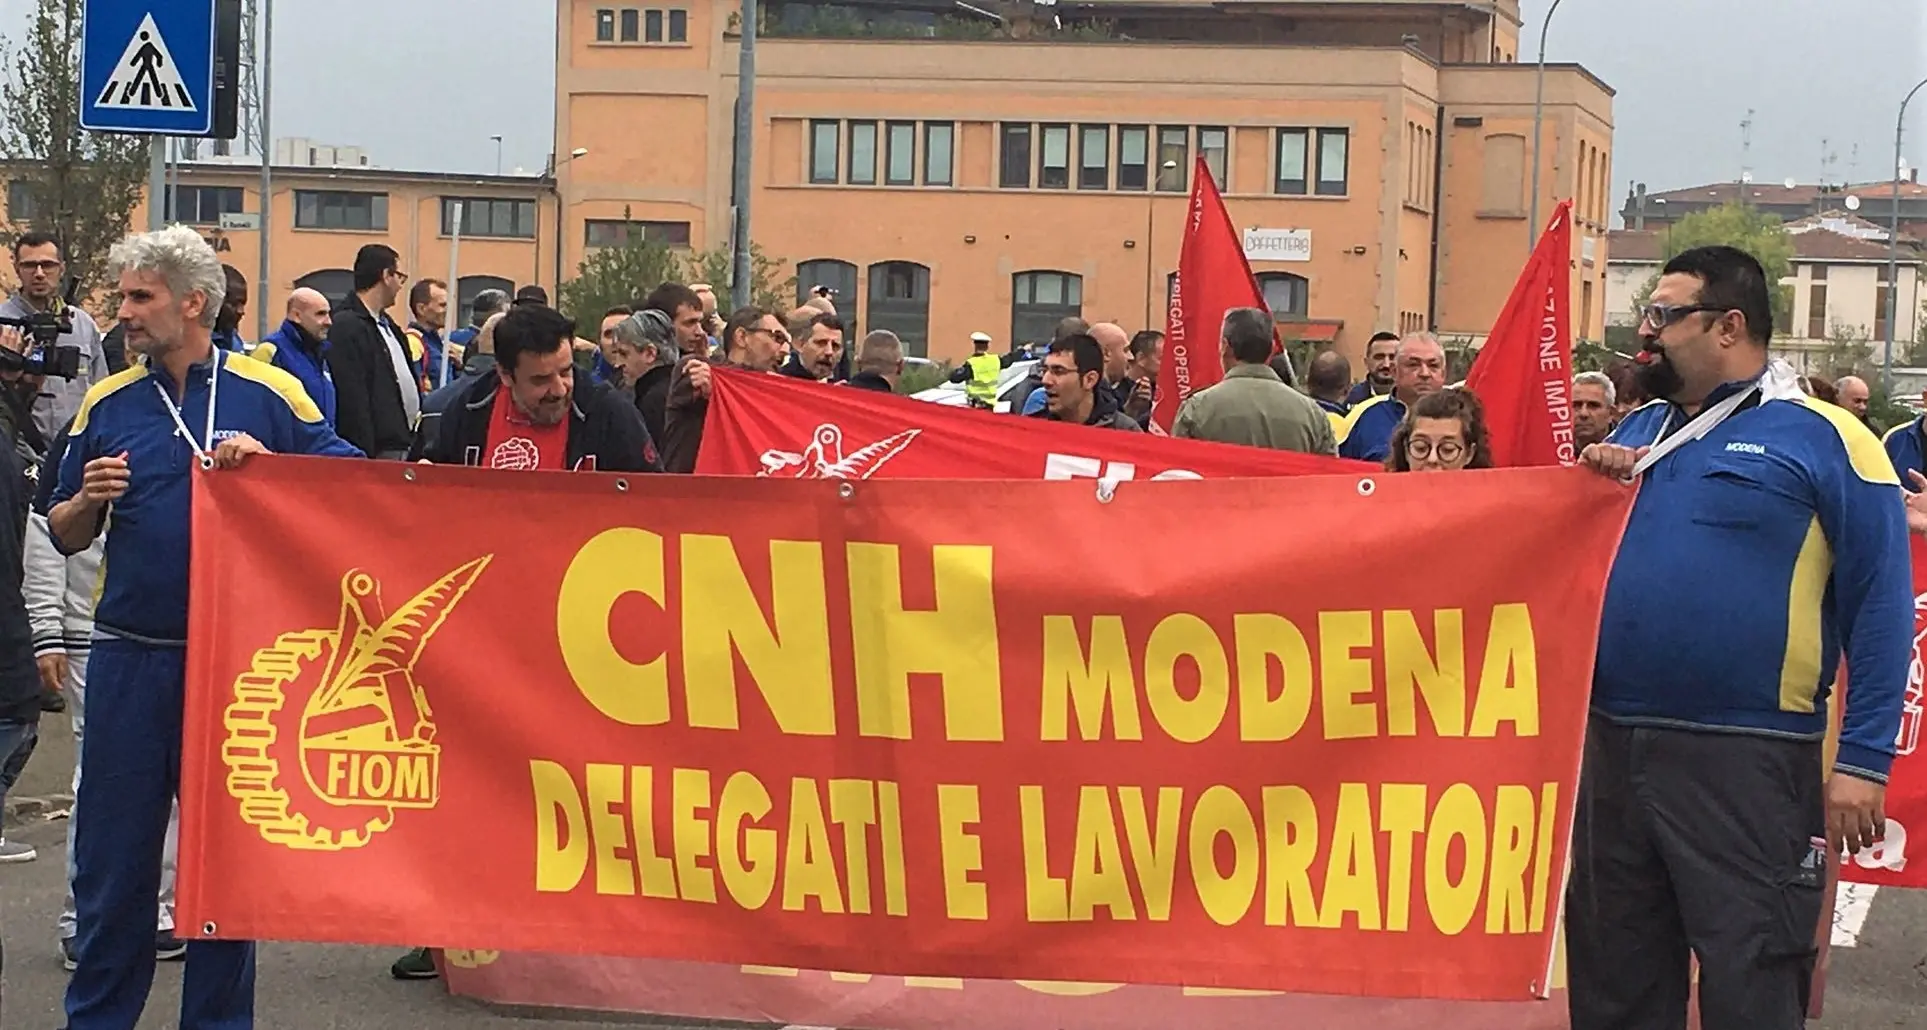 Cnh licenzia, sciopero e corteo a Modena